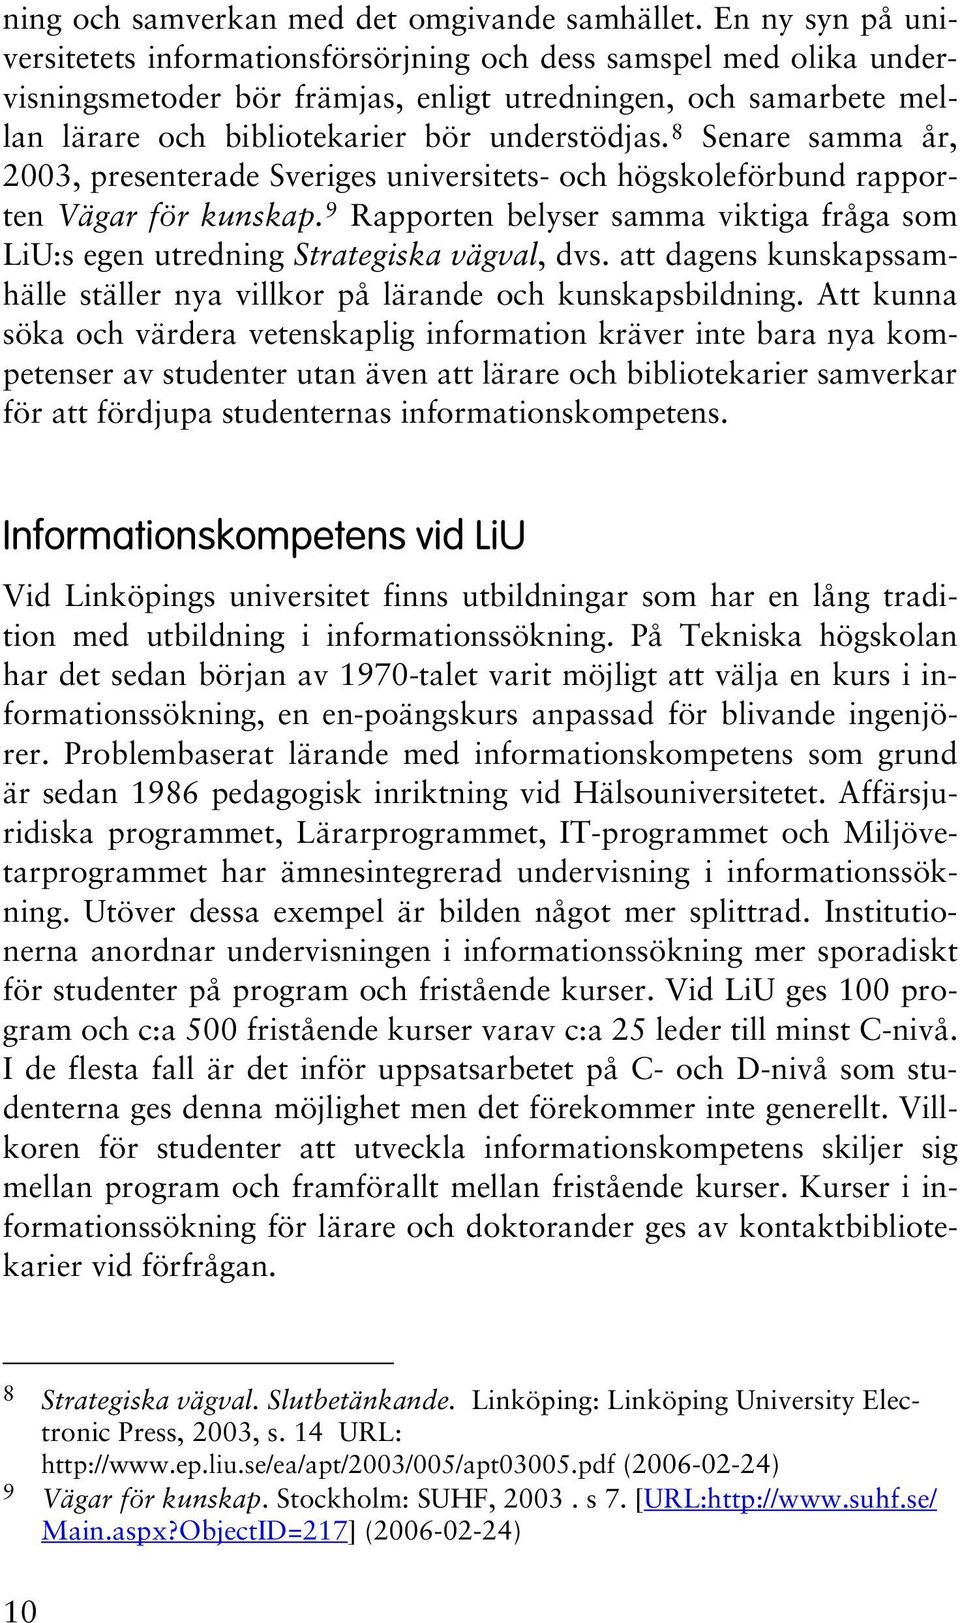 8 Senare samma år, 2003, presenterade Sveriges universitets- och högskoleförbund rapporten Vägar för kunskap. 9 Rapporten belyser samma viktiga fråga som LiU:s egen utredning Strategiska vägval, dvs.